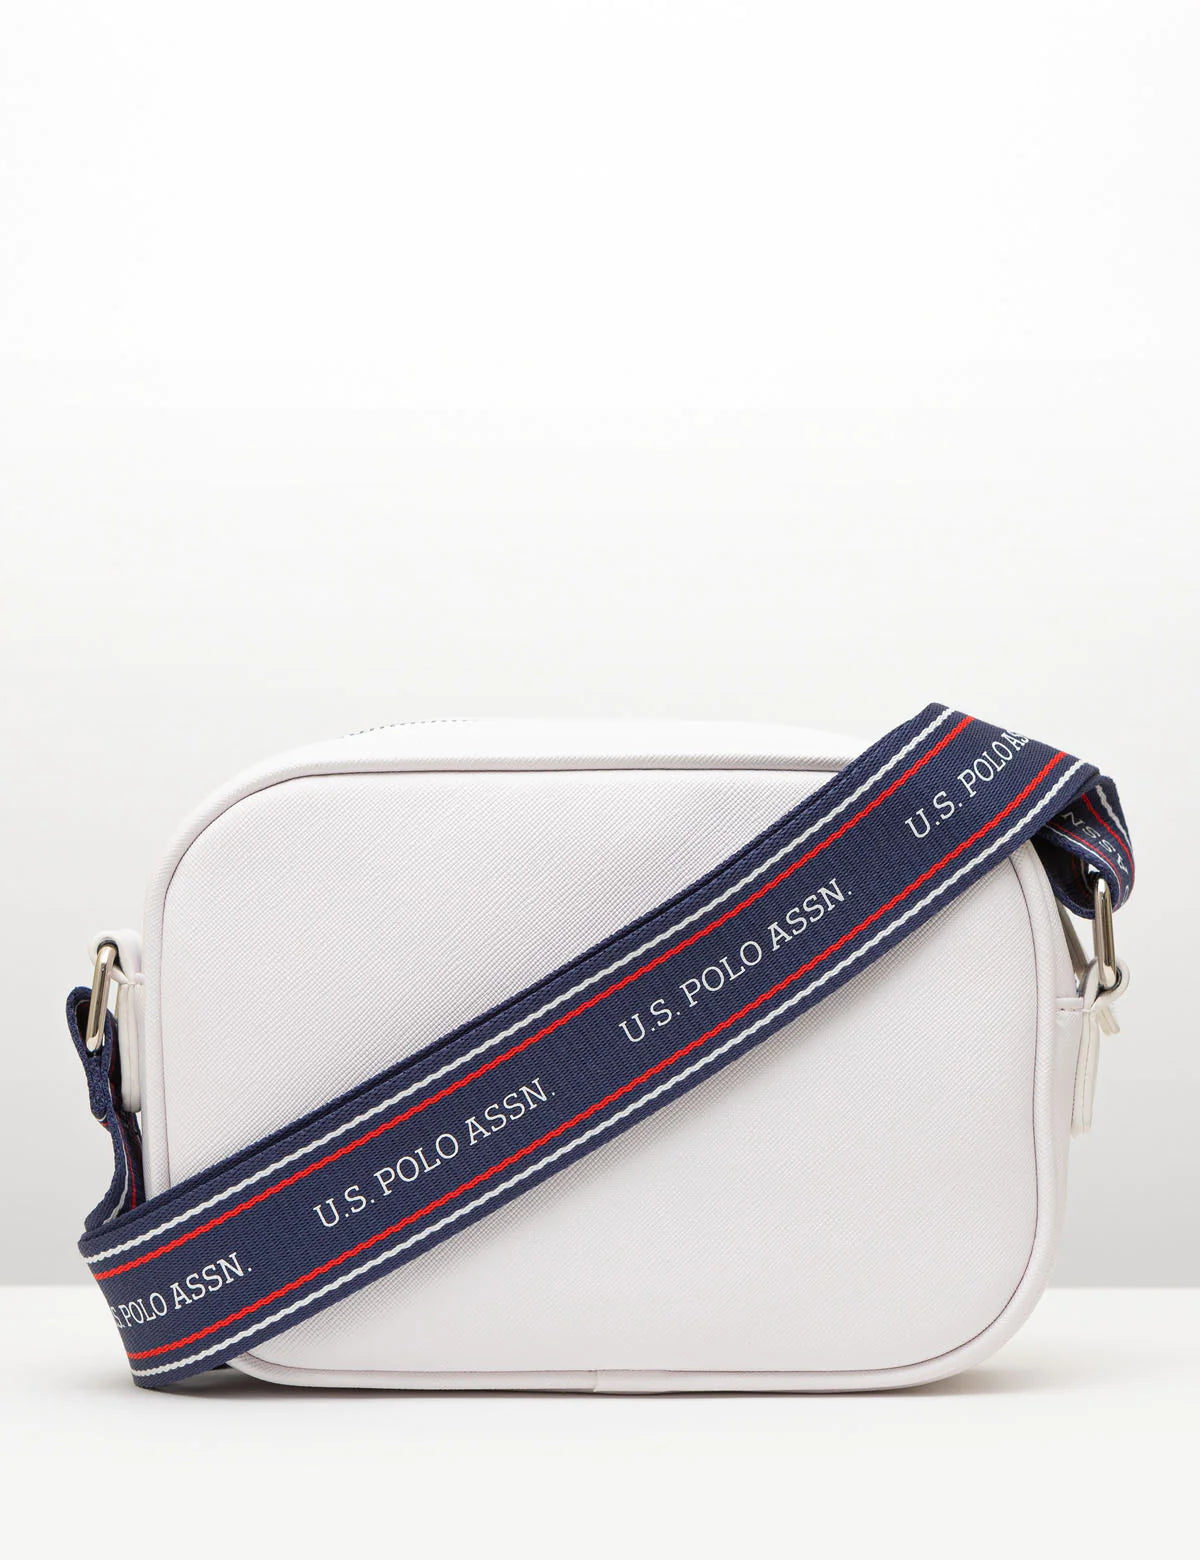 U.S. Polo Assn. Women's Classic Zip Crossbody Bag